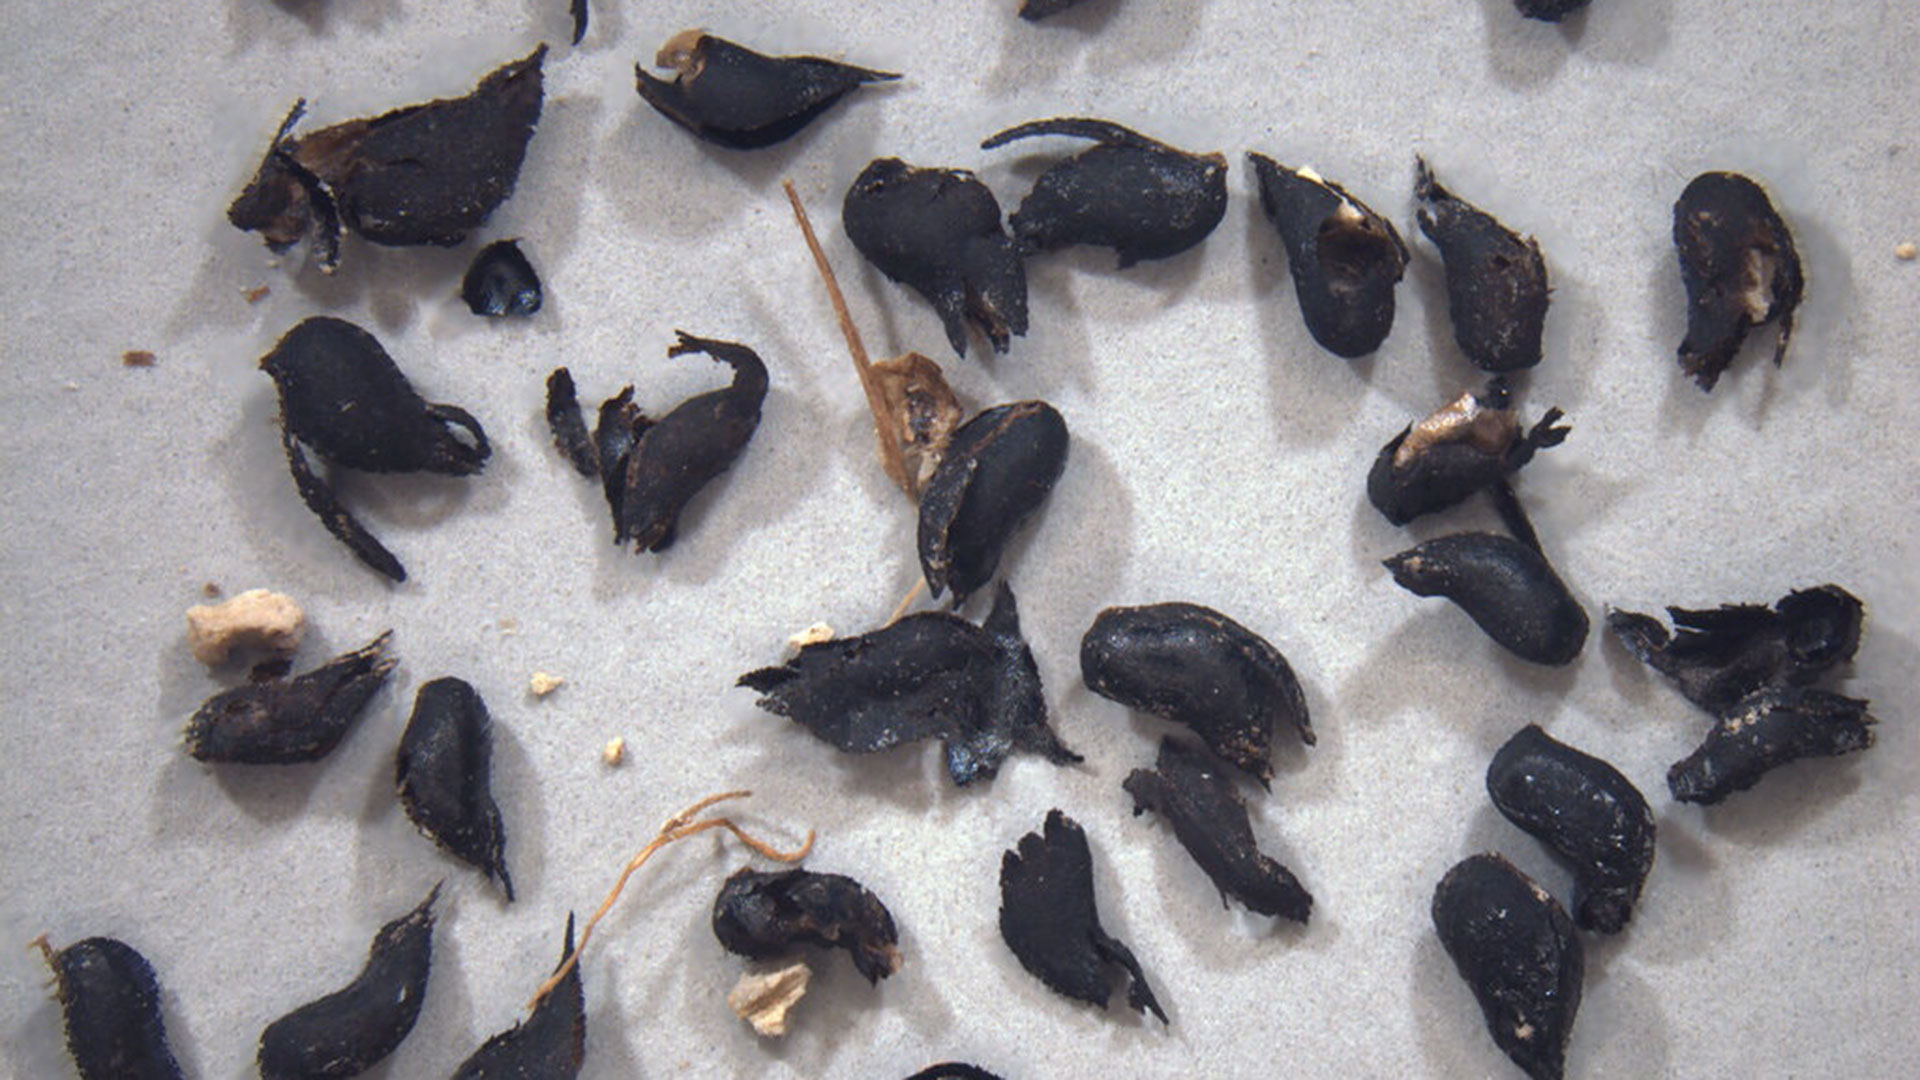 Las semillas utilizadas por los investigadores para fechar las huellas 

